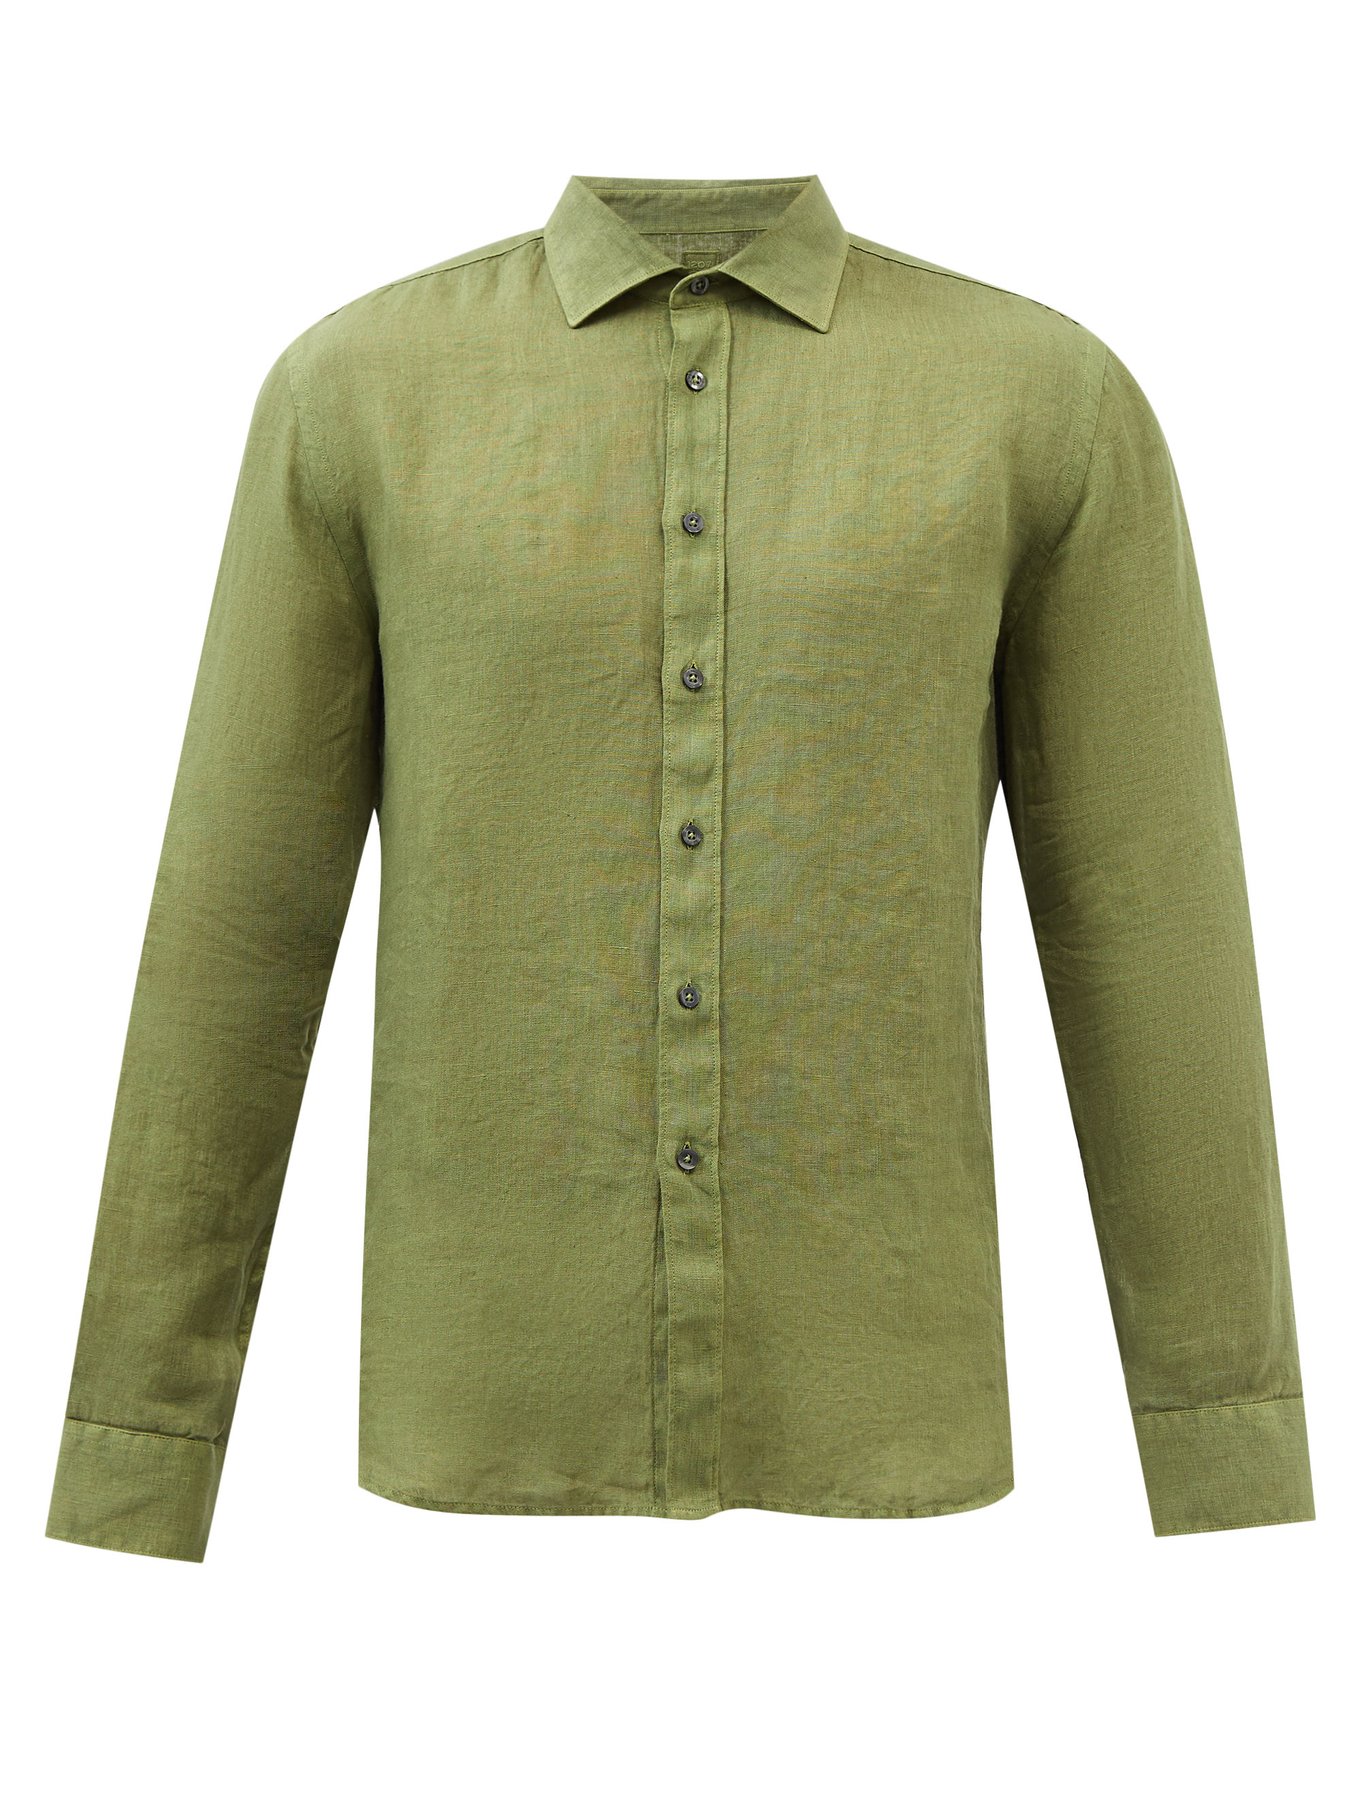 Matchesfashion Homme Vêtements Chemises Manches longues Chemise manches longues en toile de lin rayée 120% Lino 